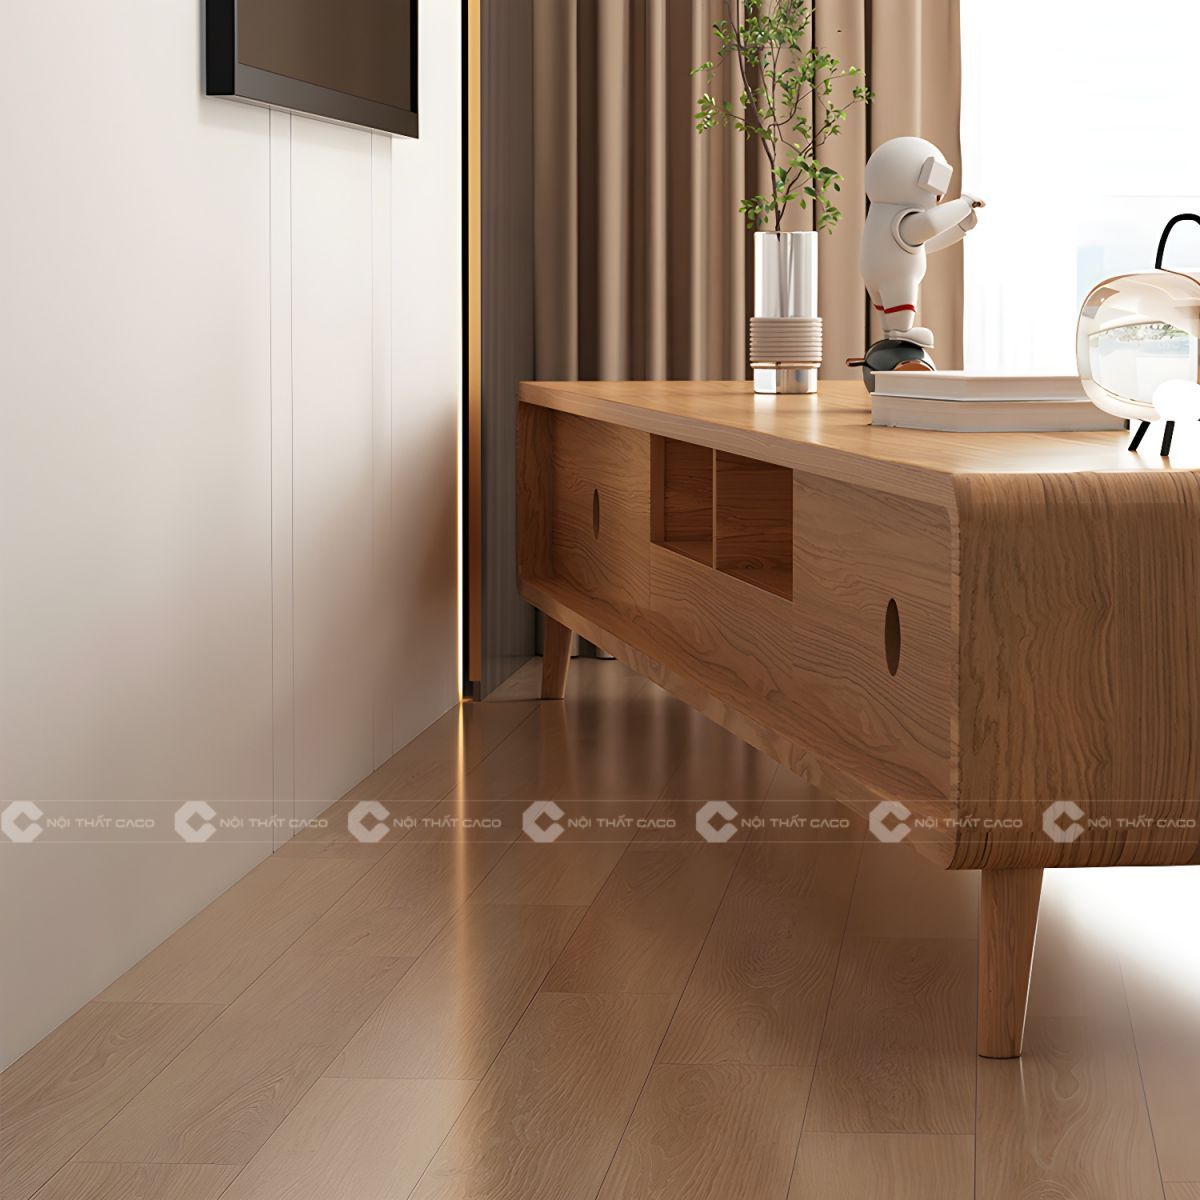 Kệ tivi gỗ cao sư tự nhiên thiết kế tinh tế hiện đại